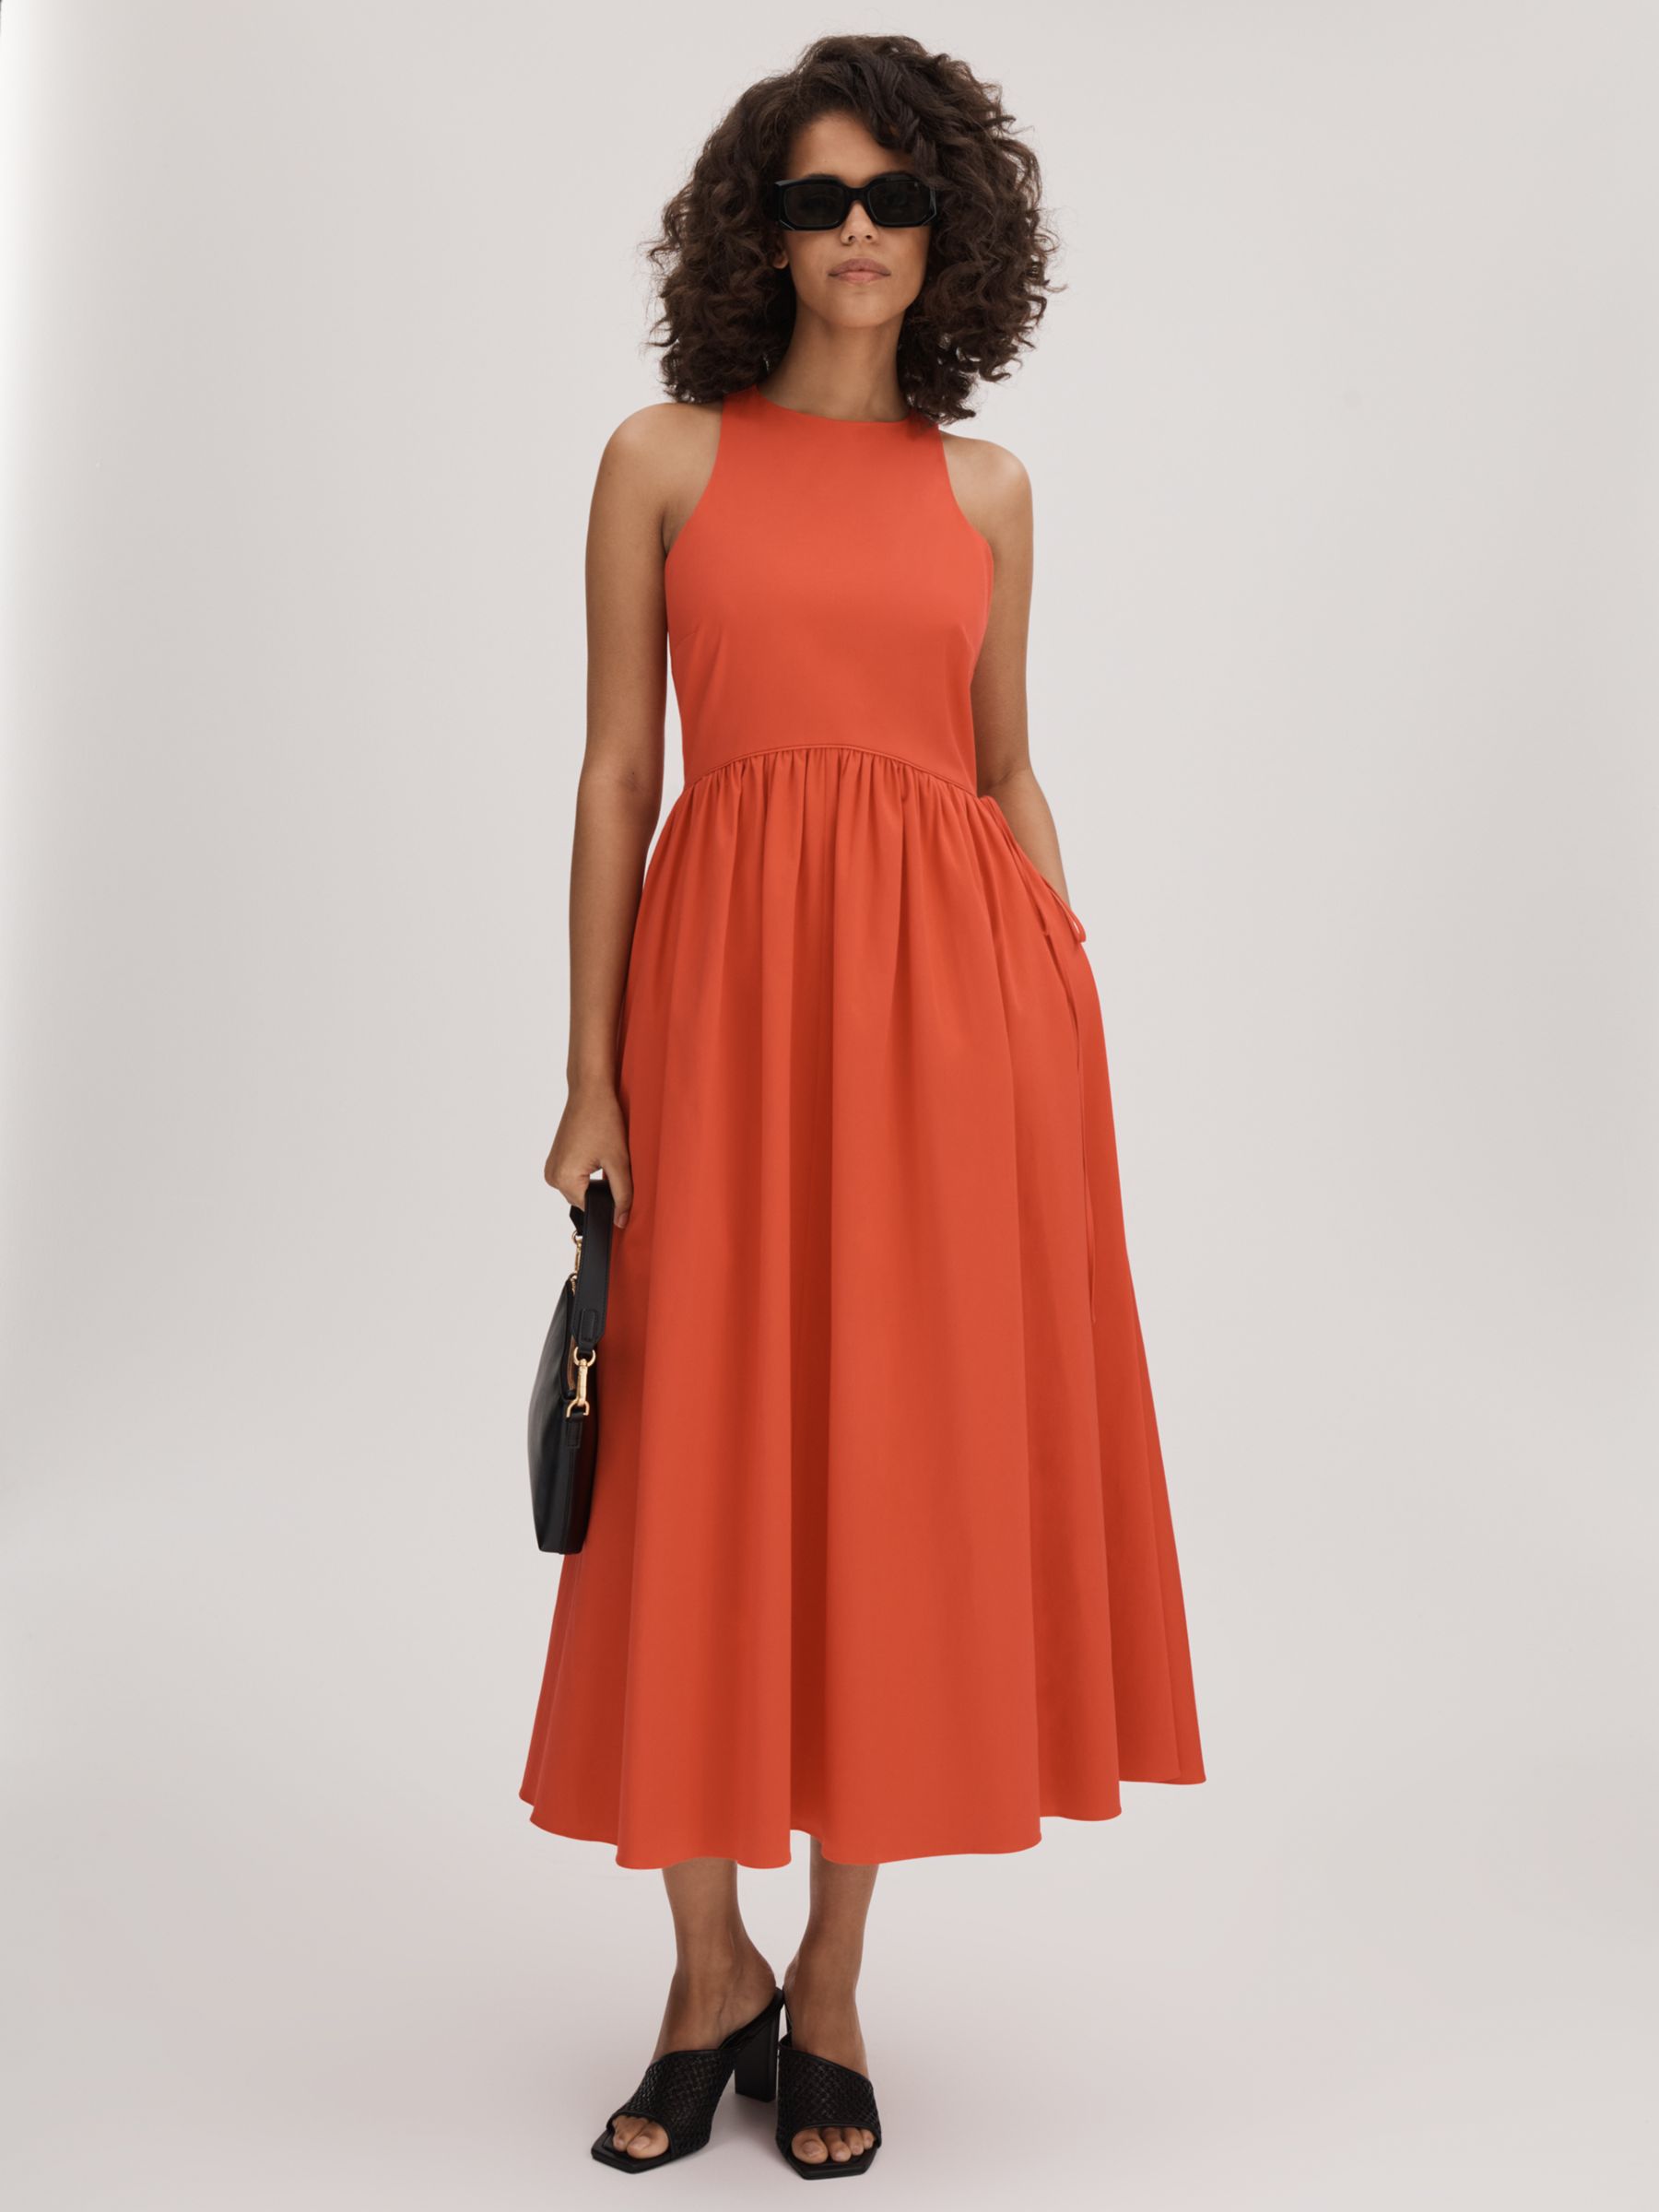 FLORERE Full Skirt Cotton Blend Dress, Deep Coral, 12